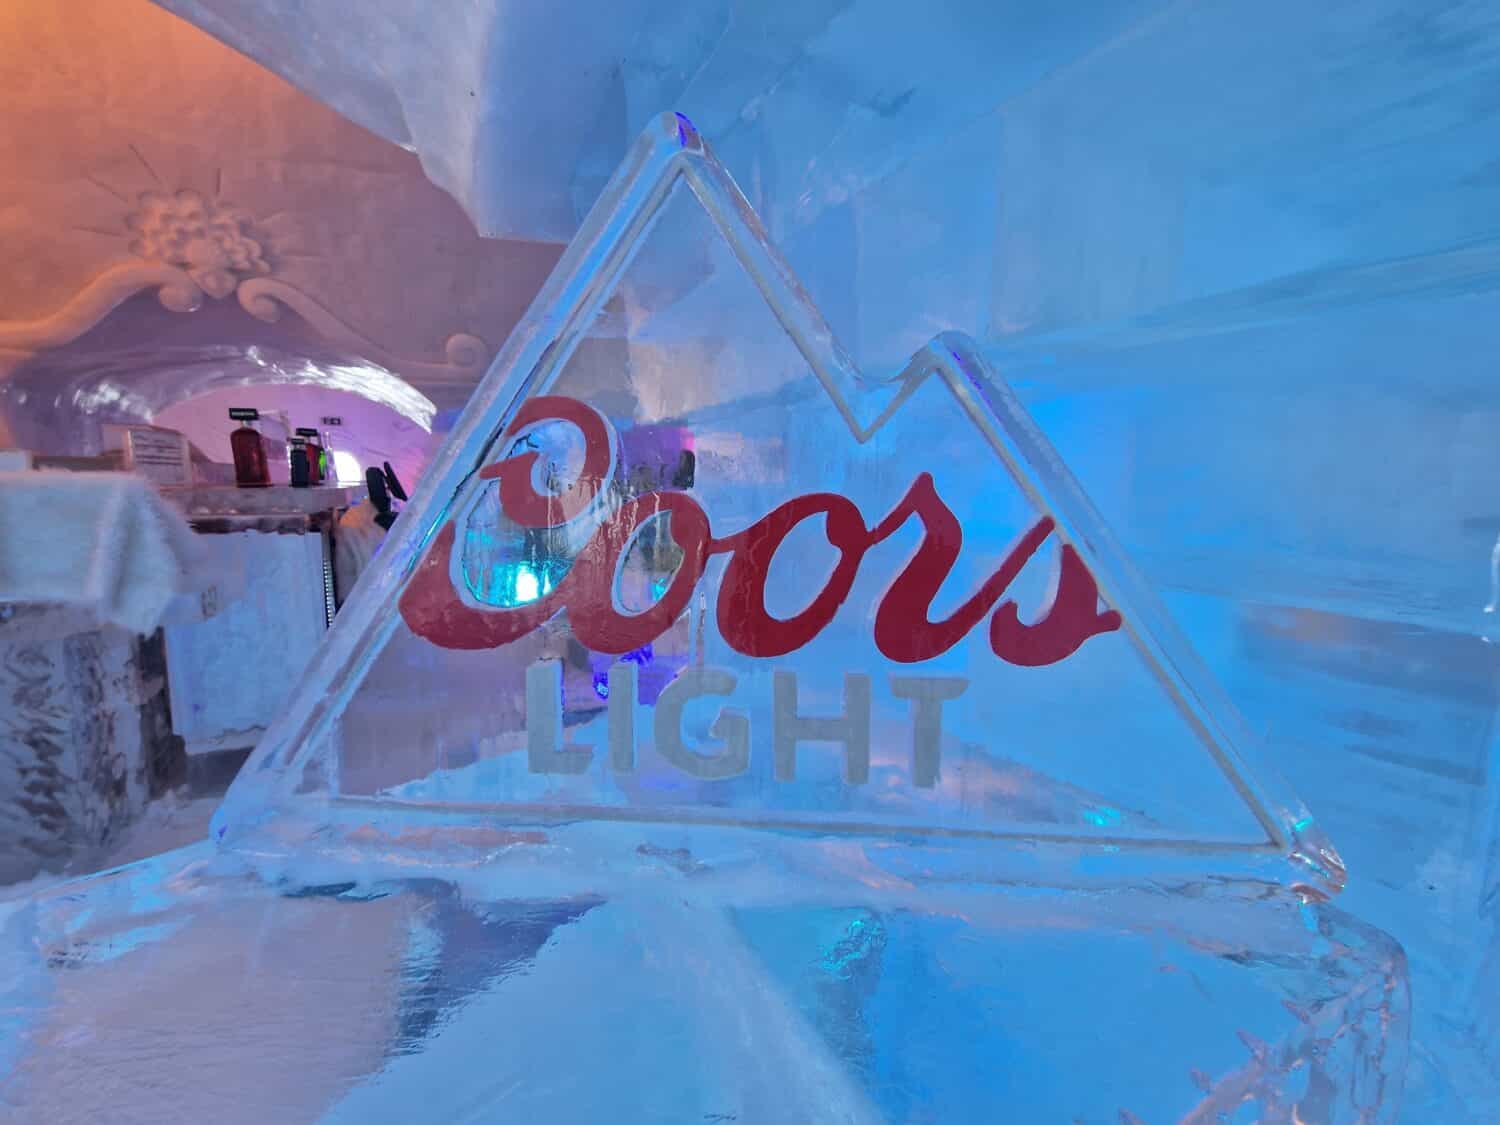 Coors Light Ice Sign al Castello di ghiaccio